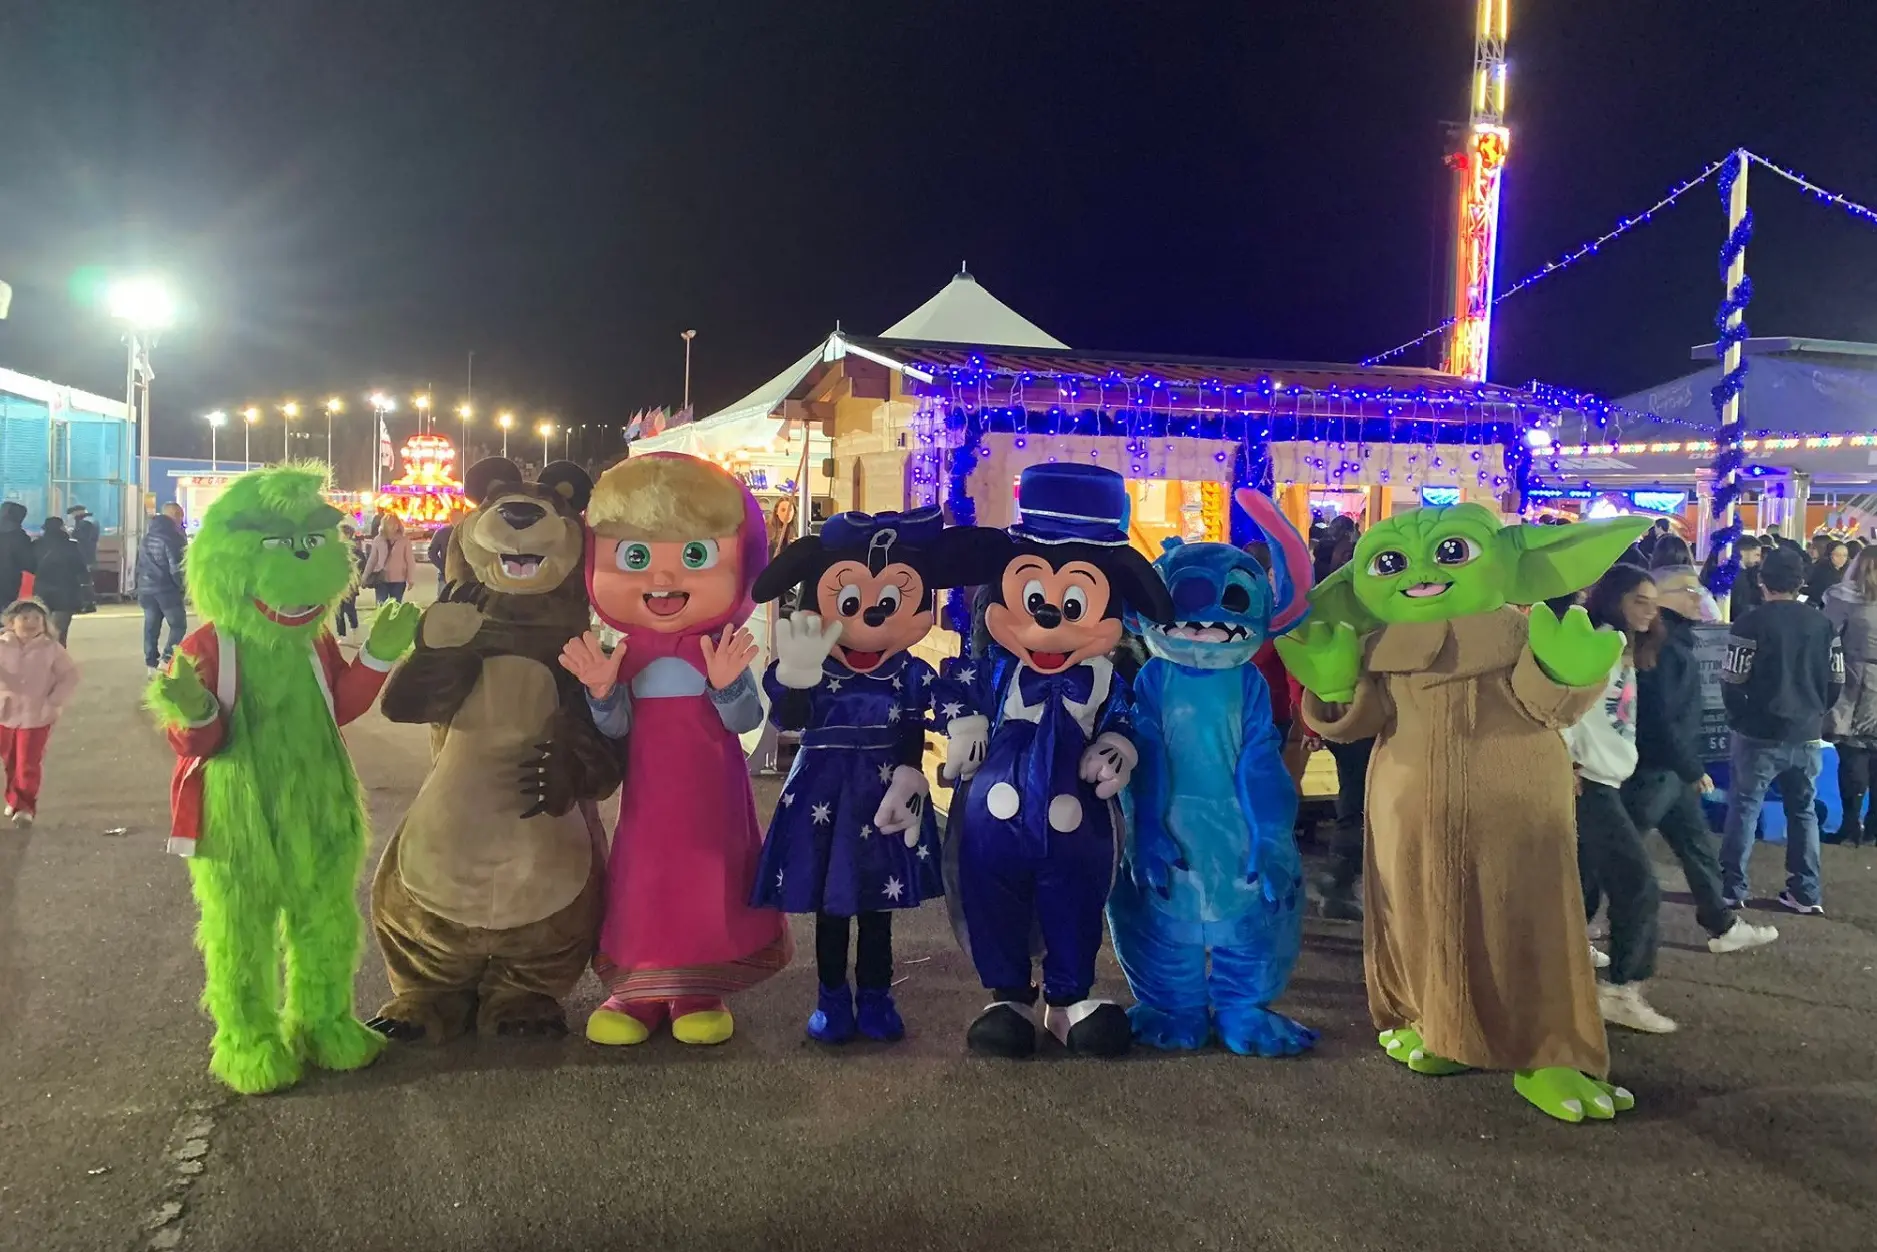 Le mascotte al luna park "Wonderland" (foto ufficio stampa)